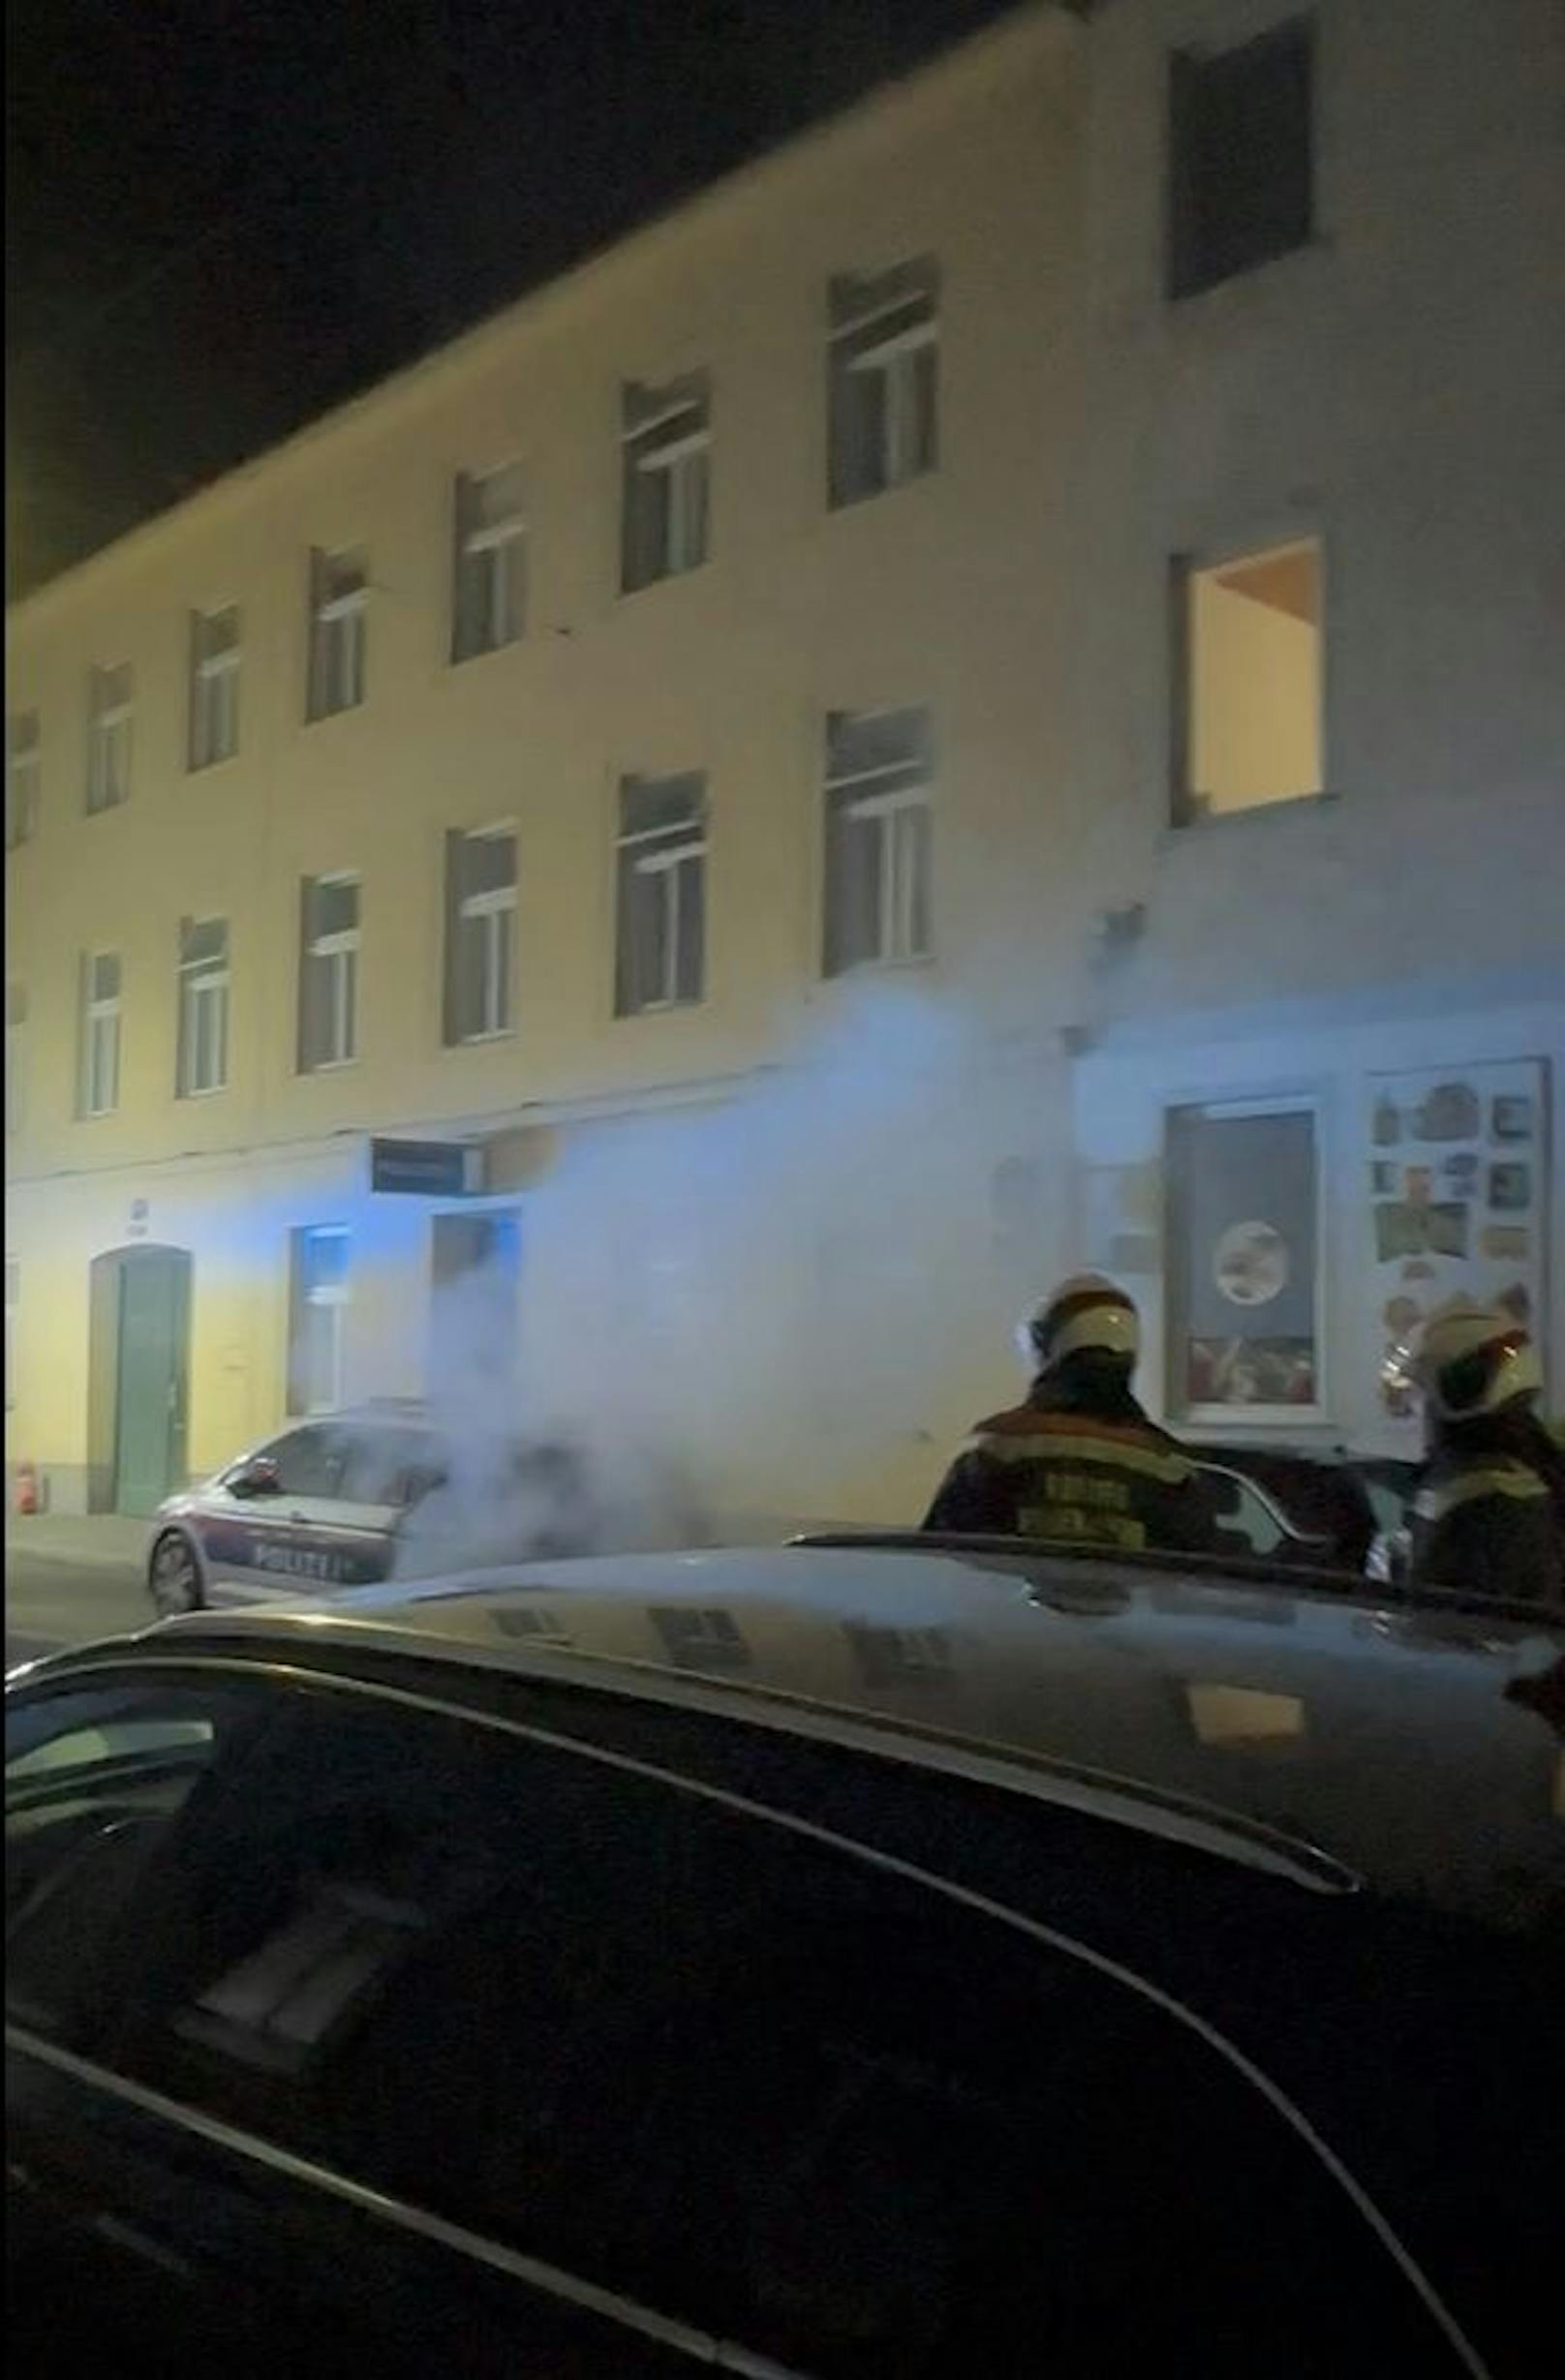 Feuer-Alarm am frühen Donnerstag in Wien-Favoriten!